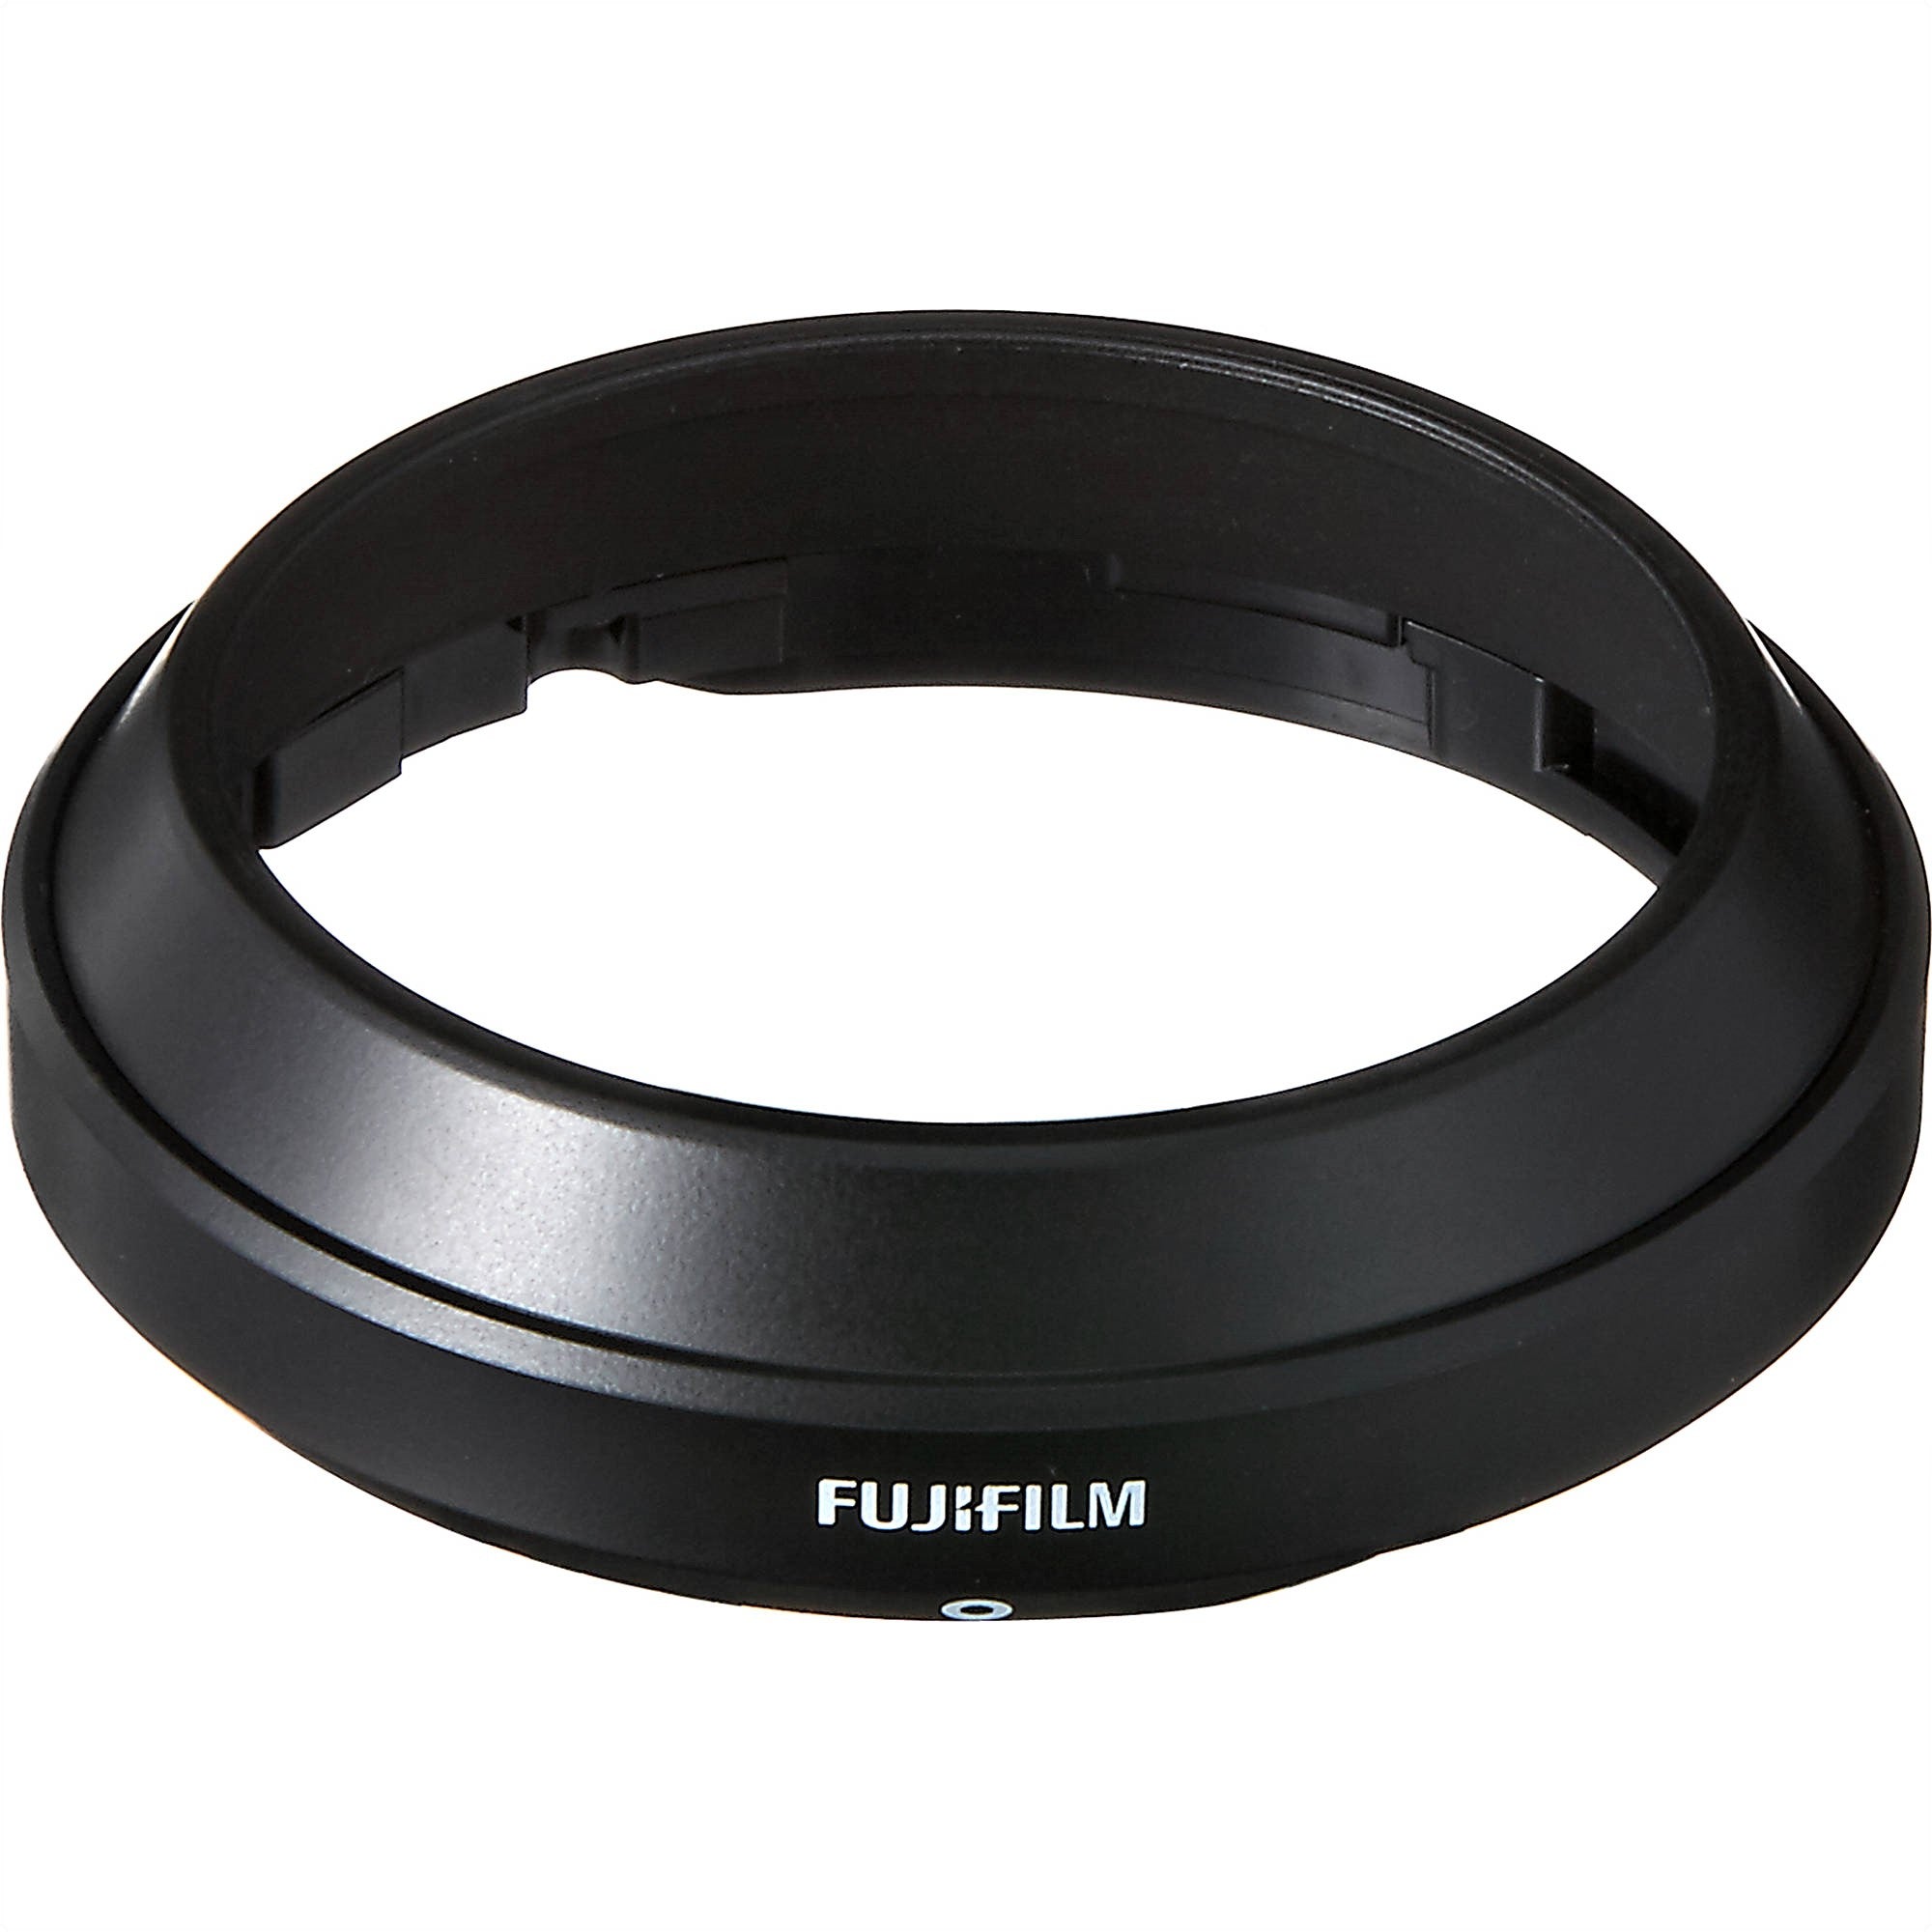 Fujifilm XF 23mm F2 R WR Lens (Black u0026 Silver)